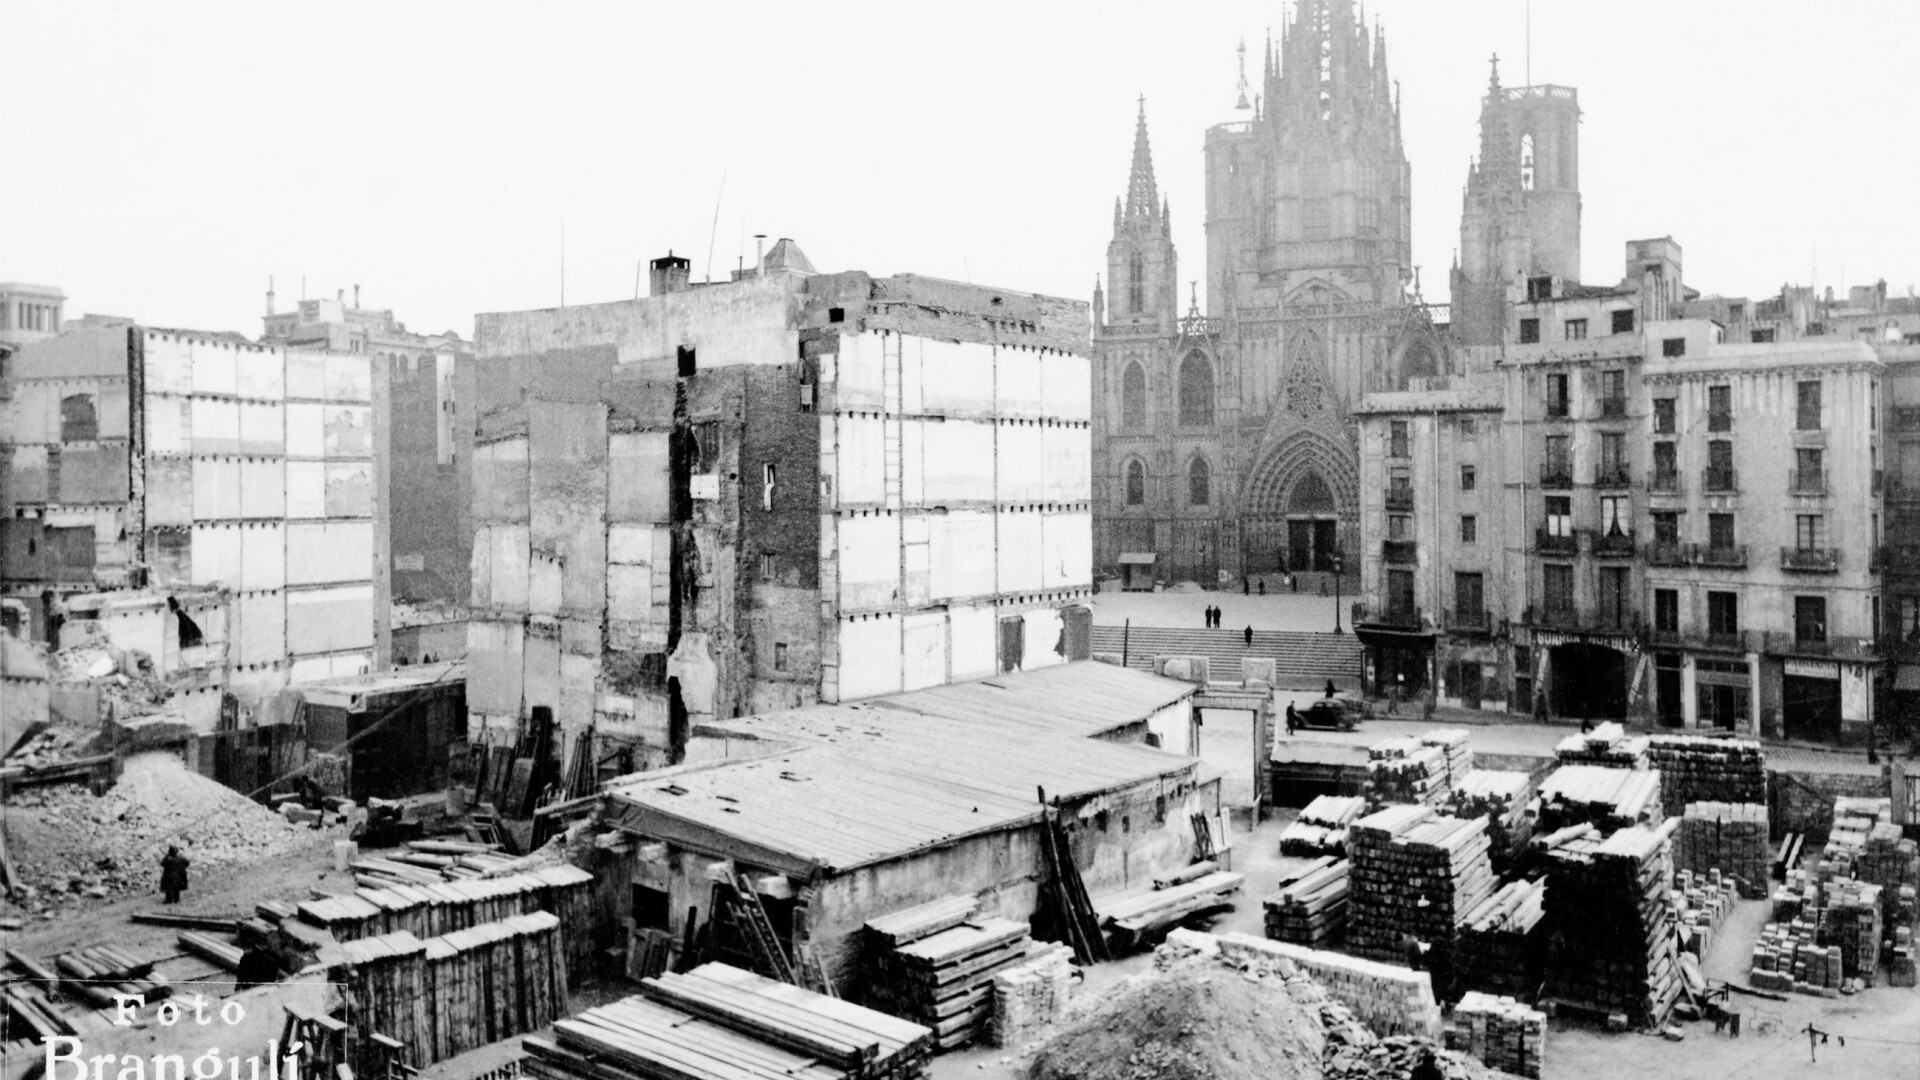 J. Brangulí. Mançana compresa entre els carrers Bou, Capellans, Sacristans i Sallent. Anys 40. © Arxiu Històric del Col·legi d’Arquitectes de Catalunya